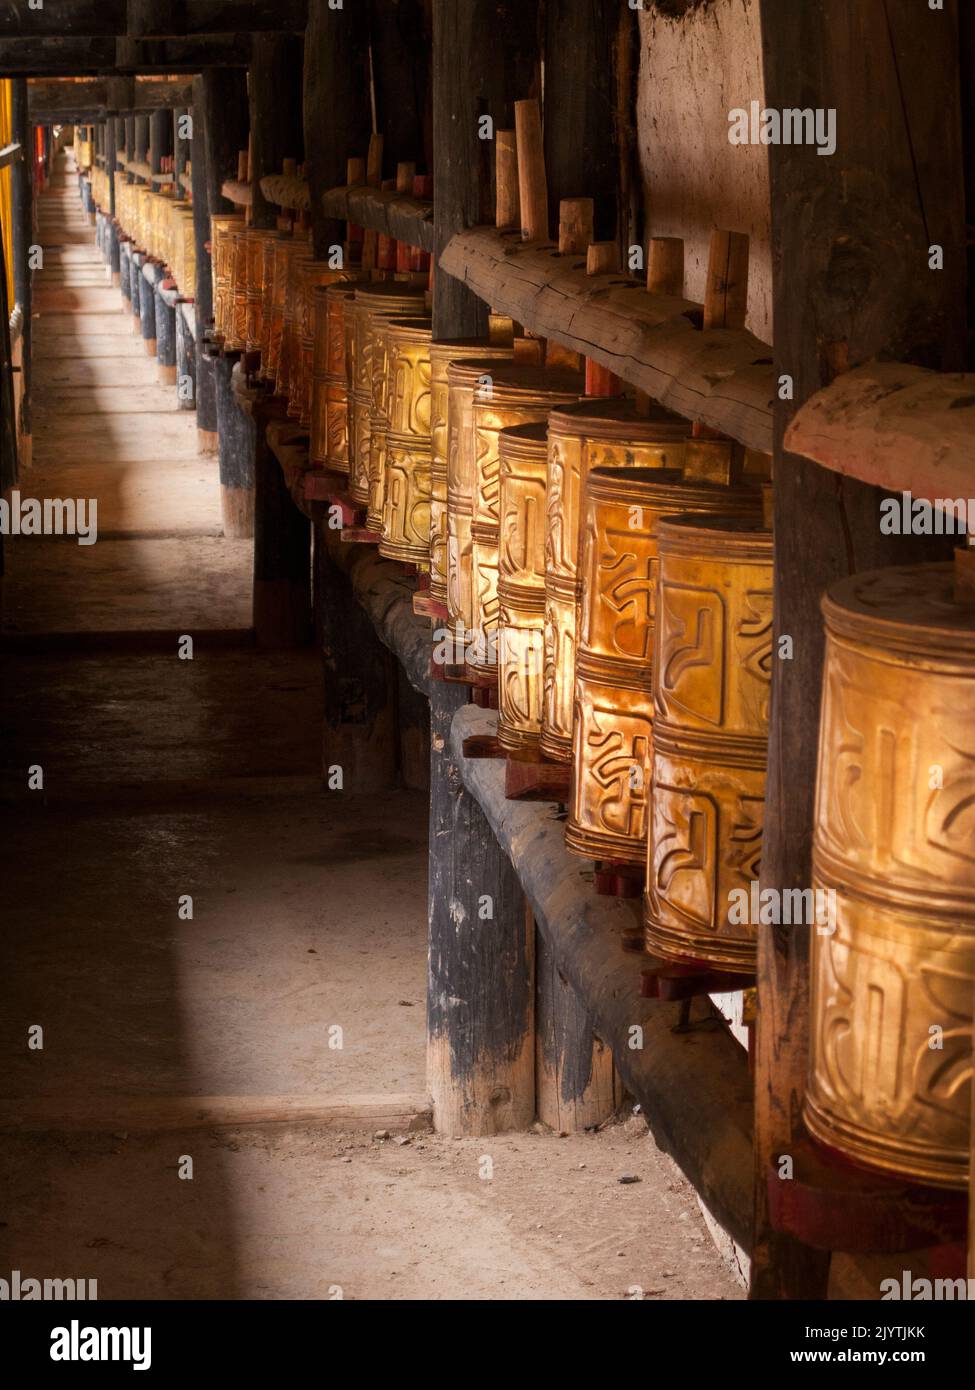 Le ruote di preghiera buddhiste erano usate per praticare il buddhismo tibetano in Cina, in un tempio locale in un villaggio fuori dall'antica città di Songpan, nella provincia settentrionale del Sichuan, in Cina. PRC. (126) Foto Stock